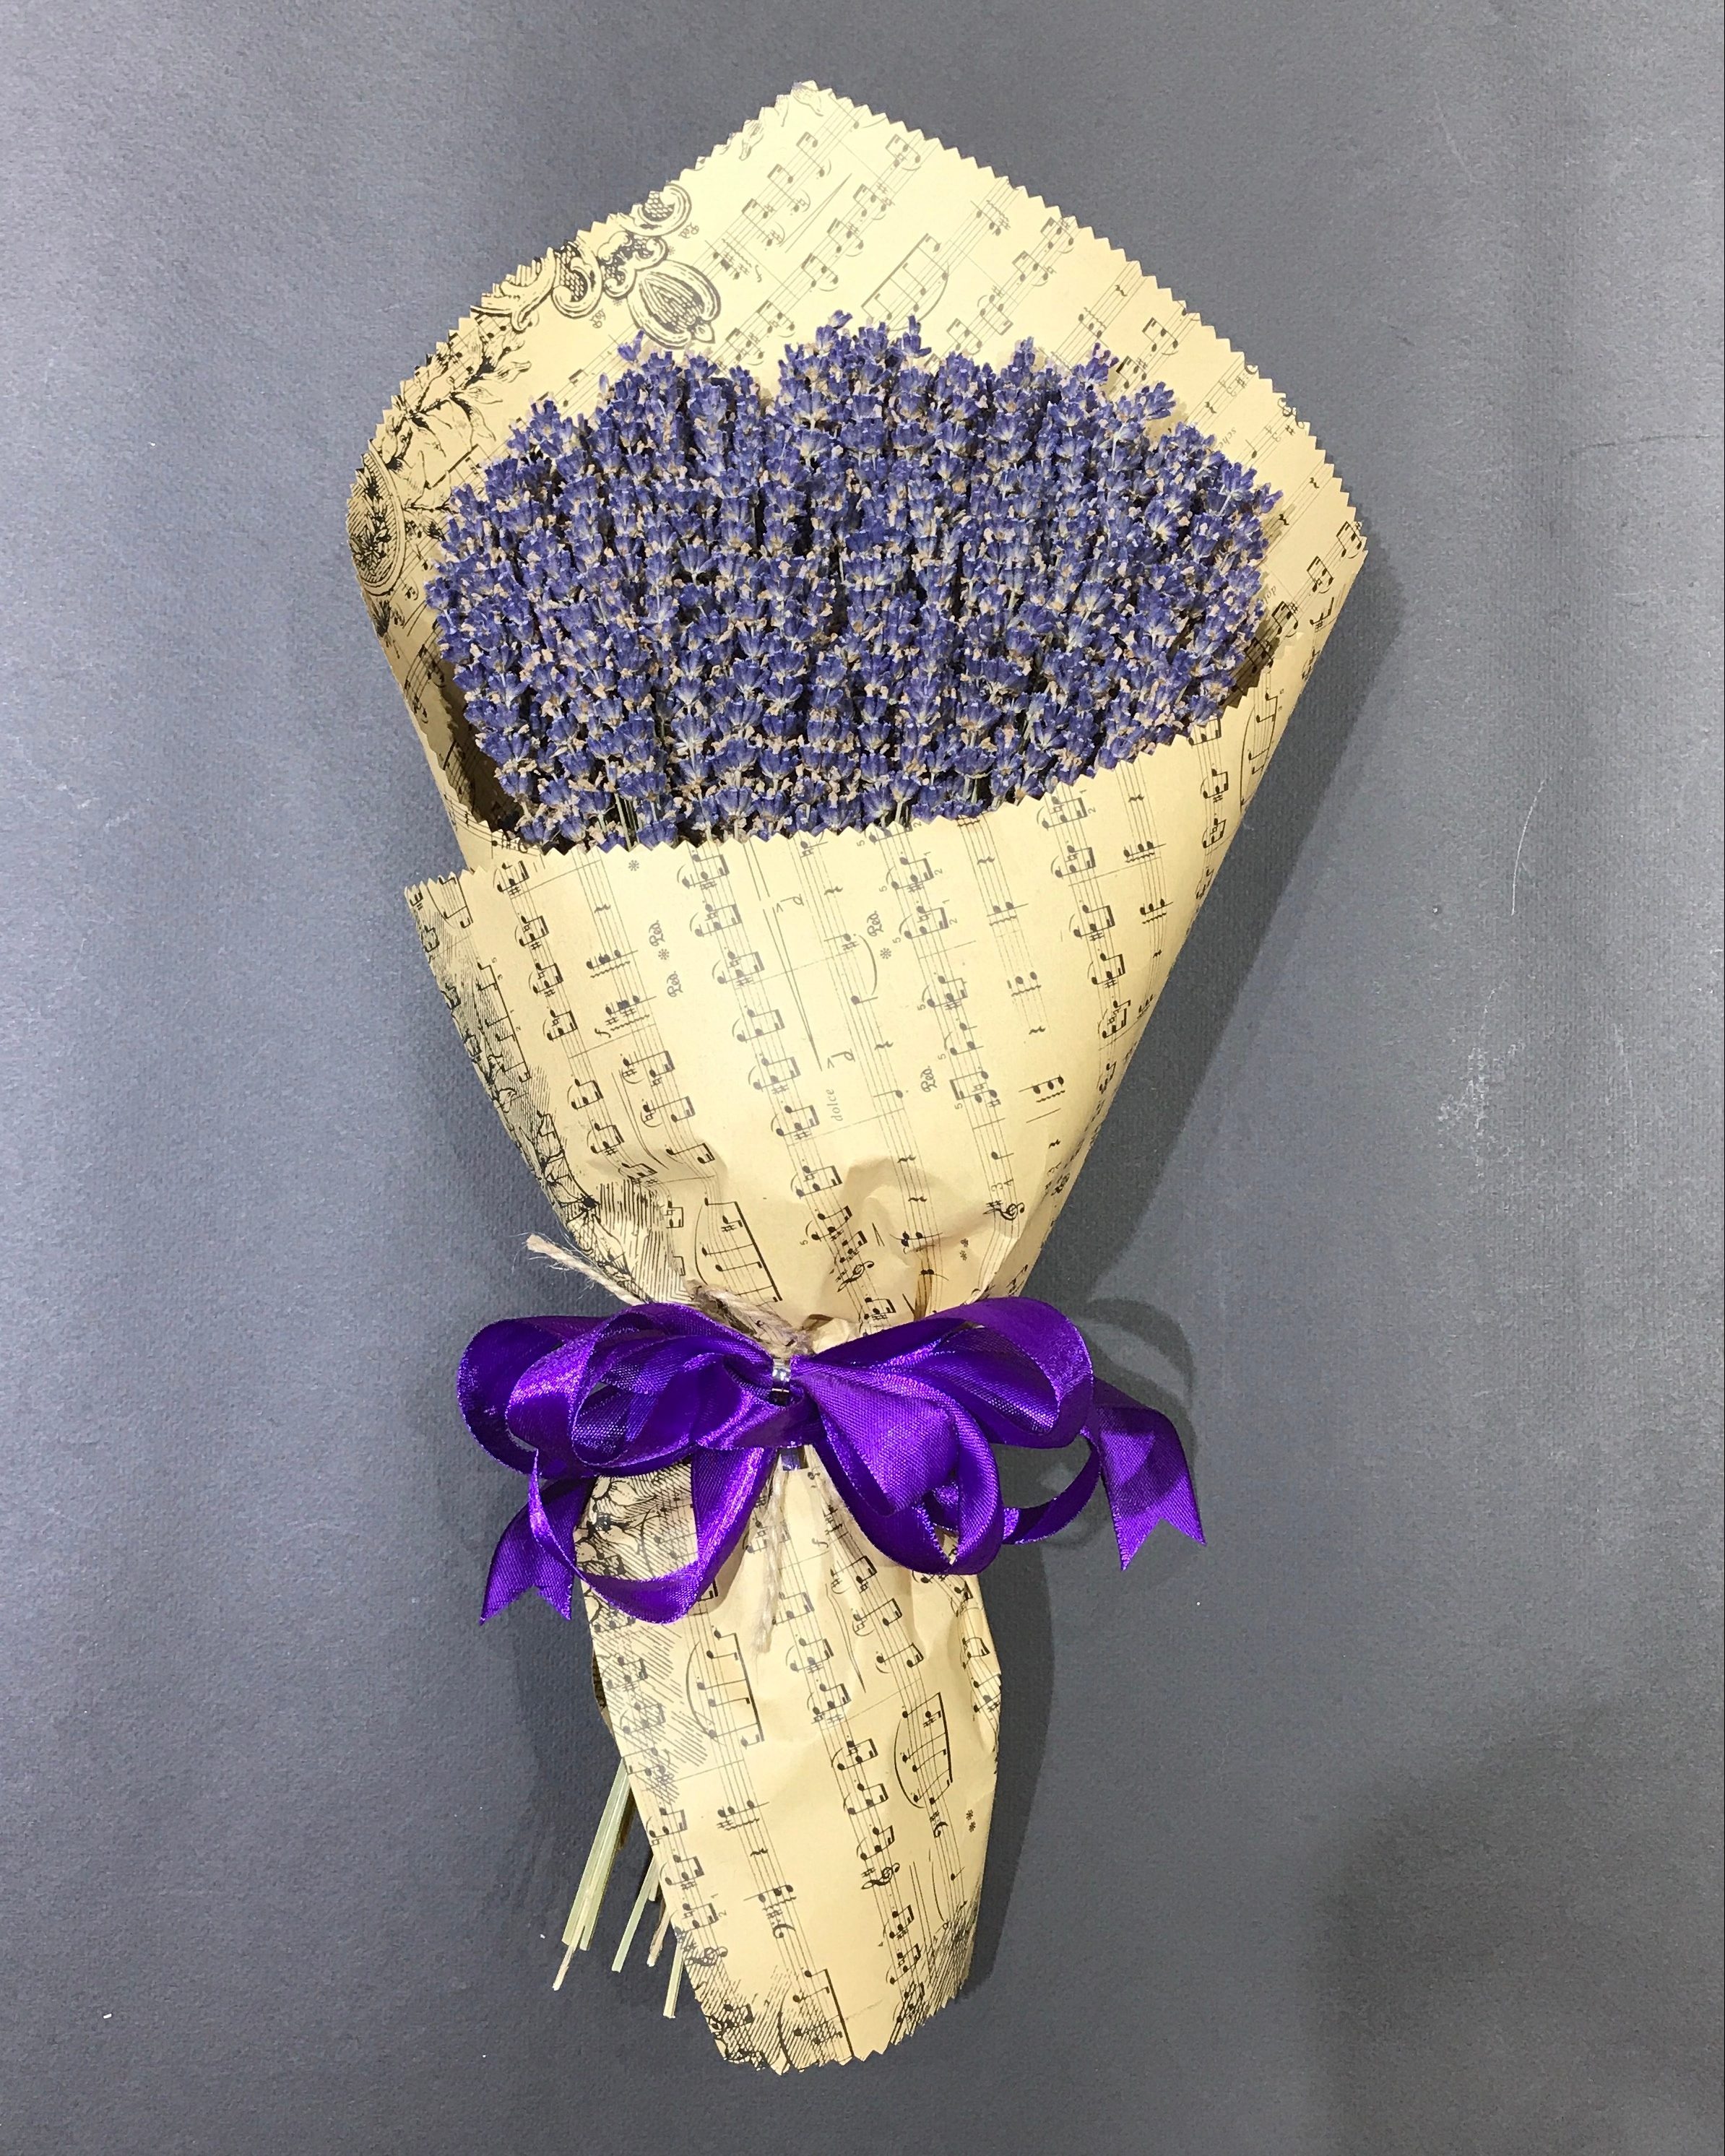 Tổng hợp hình ảnh hoa lavender khô đẹp nhất – Loài hoa may mắn, hạnh phúc - [Kích thước hình ảnh: 2388x2985 px]